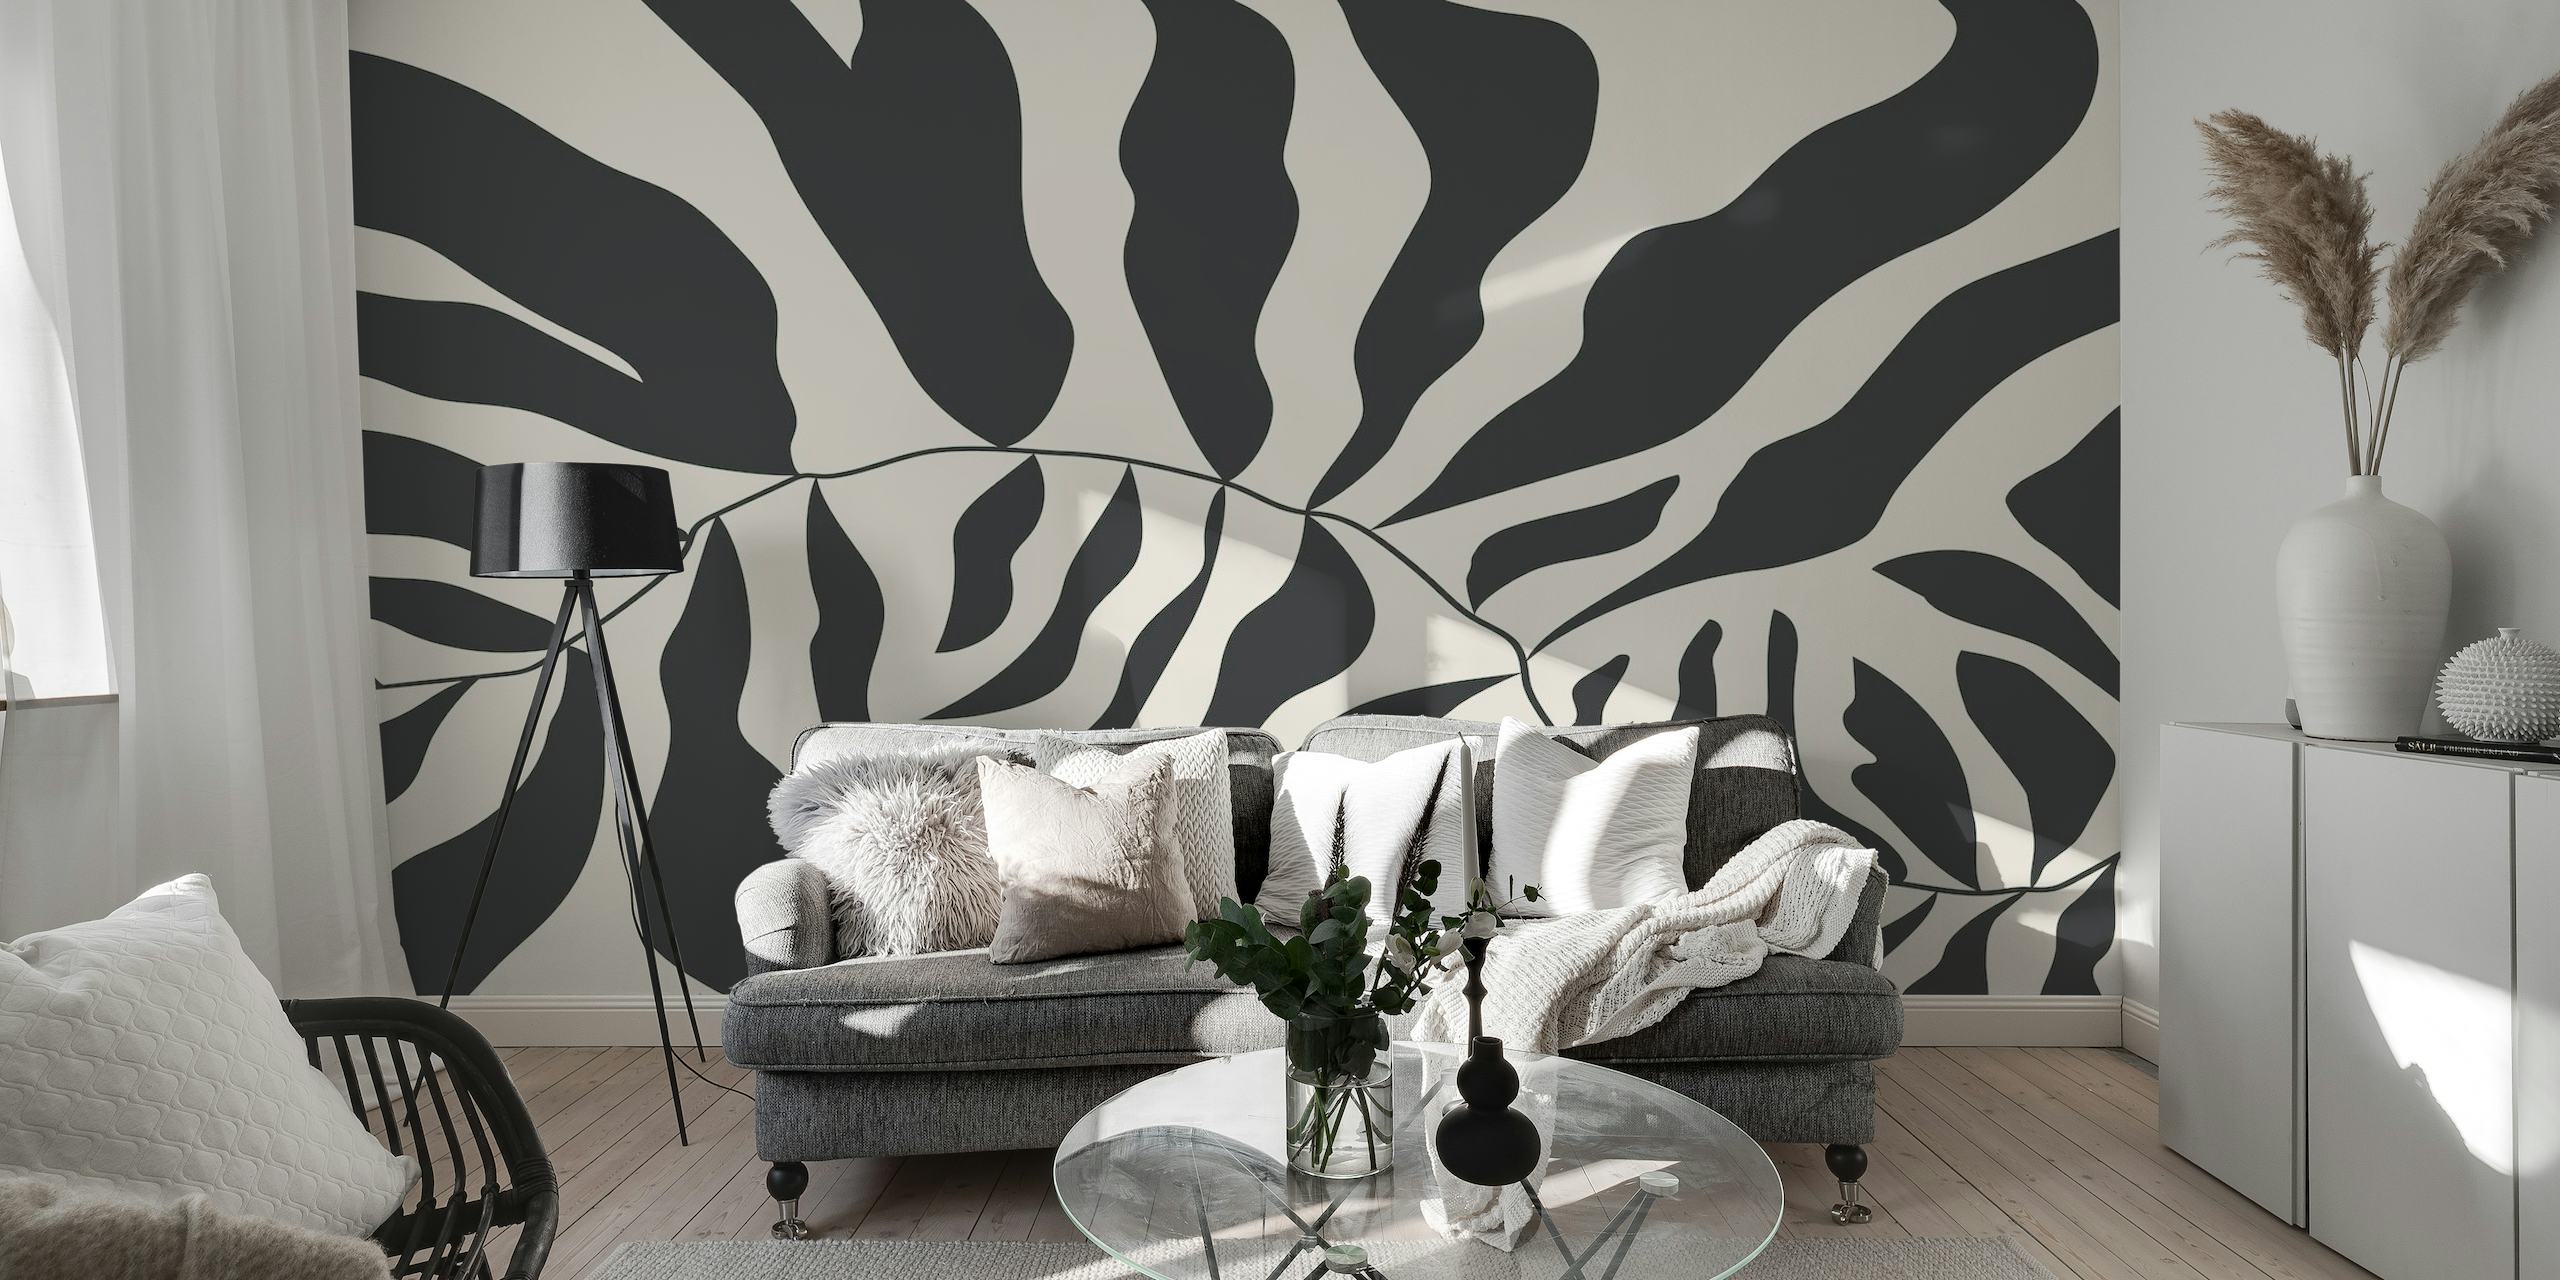 Papier peint abstrait noir et blanc de style Matisse représentant des formes organiques